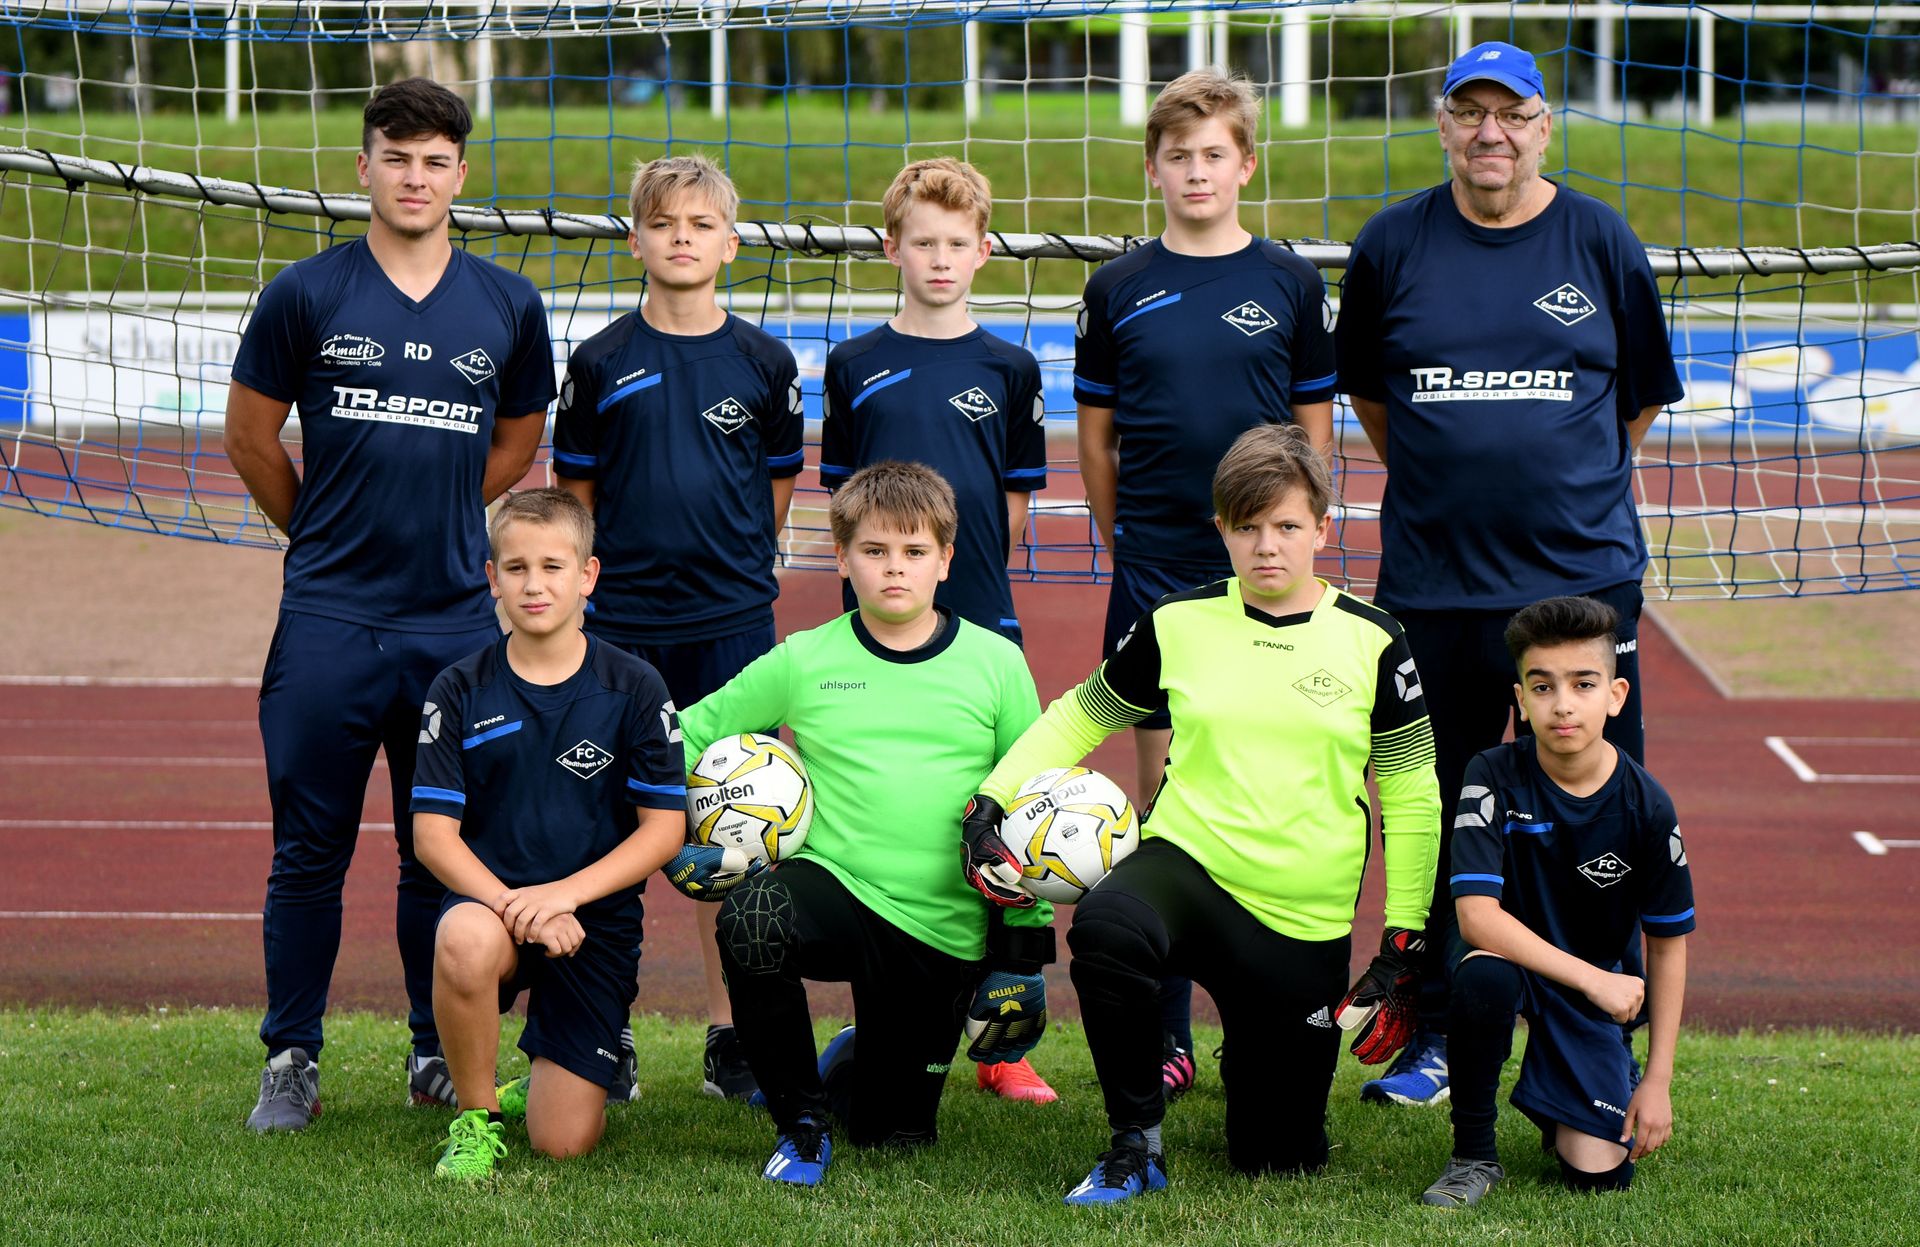 FC Stadthagen D-Junioren - D-Junioren Jahrgang